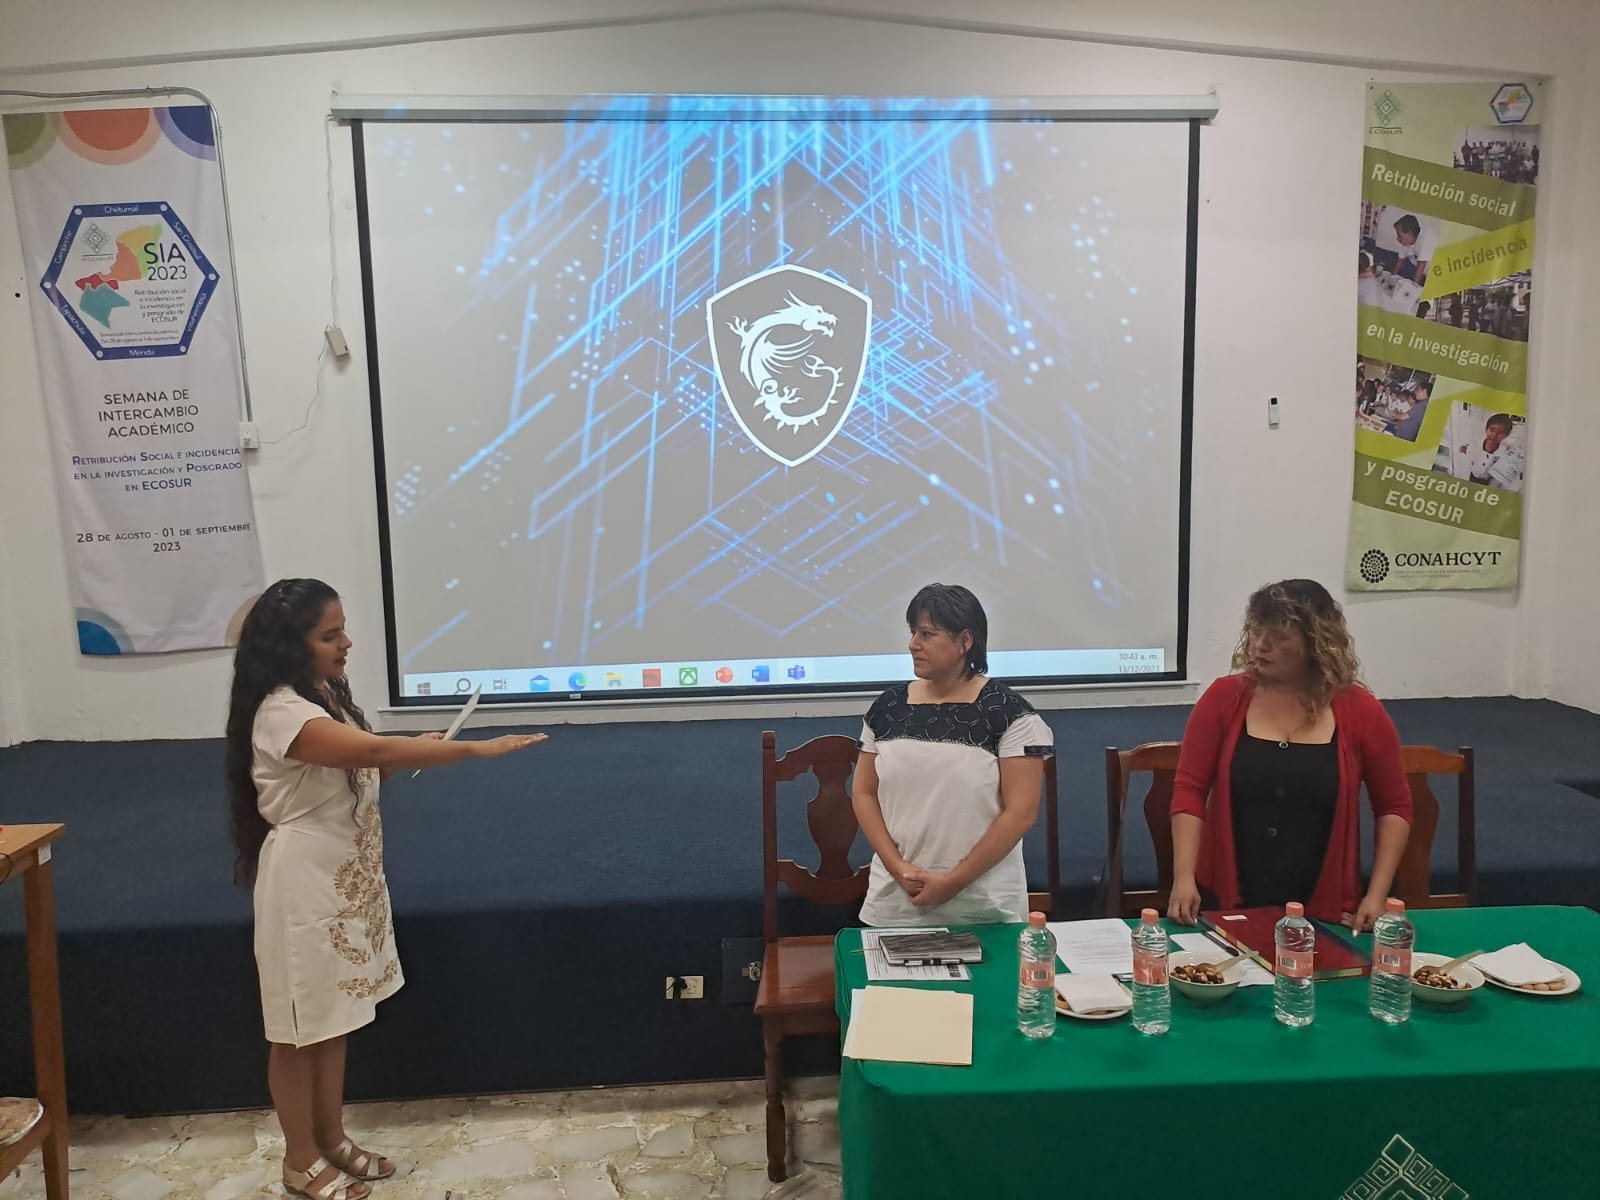 Montserrat Padilla Villavicencio obtiene el grado de Maestra en Ciencias con la tesis “Estudio molecular de arañas del género Cupiennius del sureste de México: DNA barcoding y peptide mass fingerprinting”